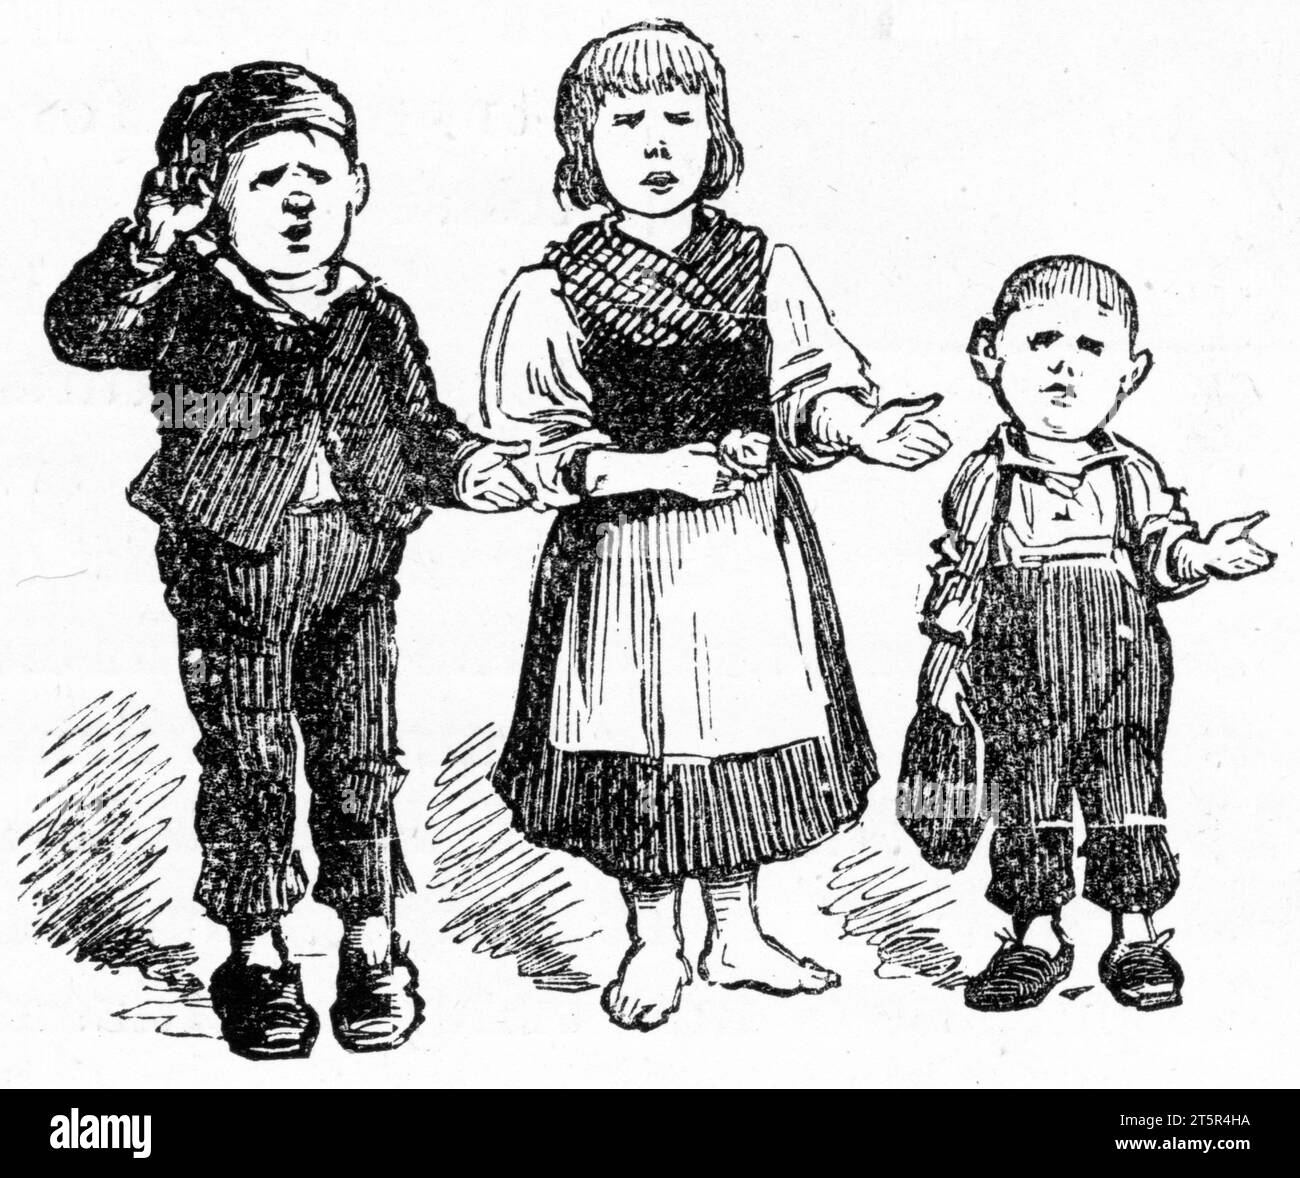 Gravure de trois enfants mendiant dans les rues, publiée vers 1887 Banque D'Images